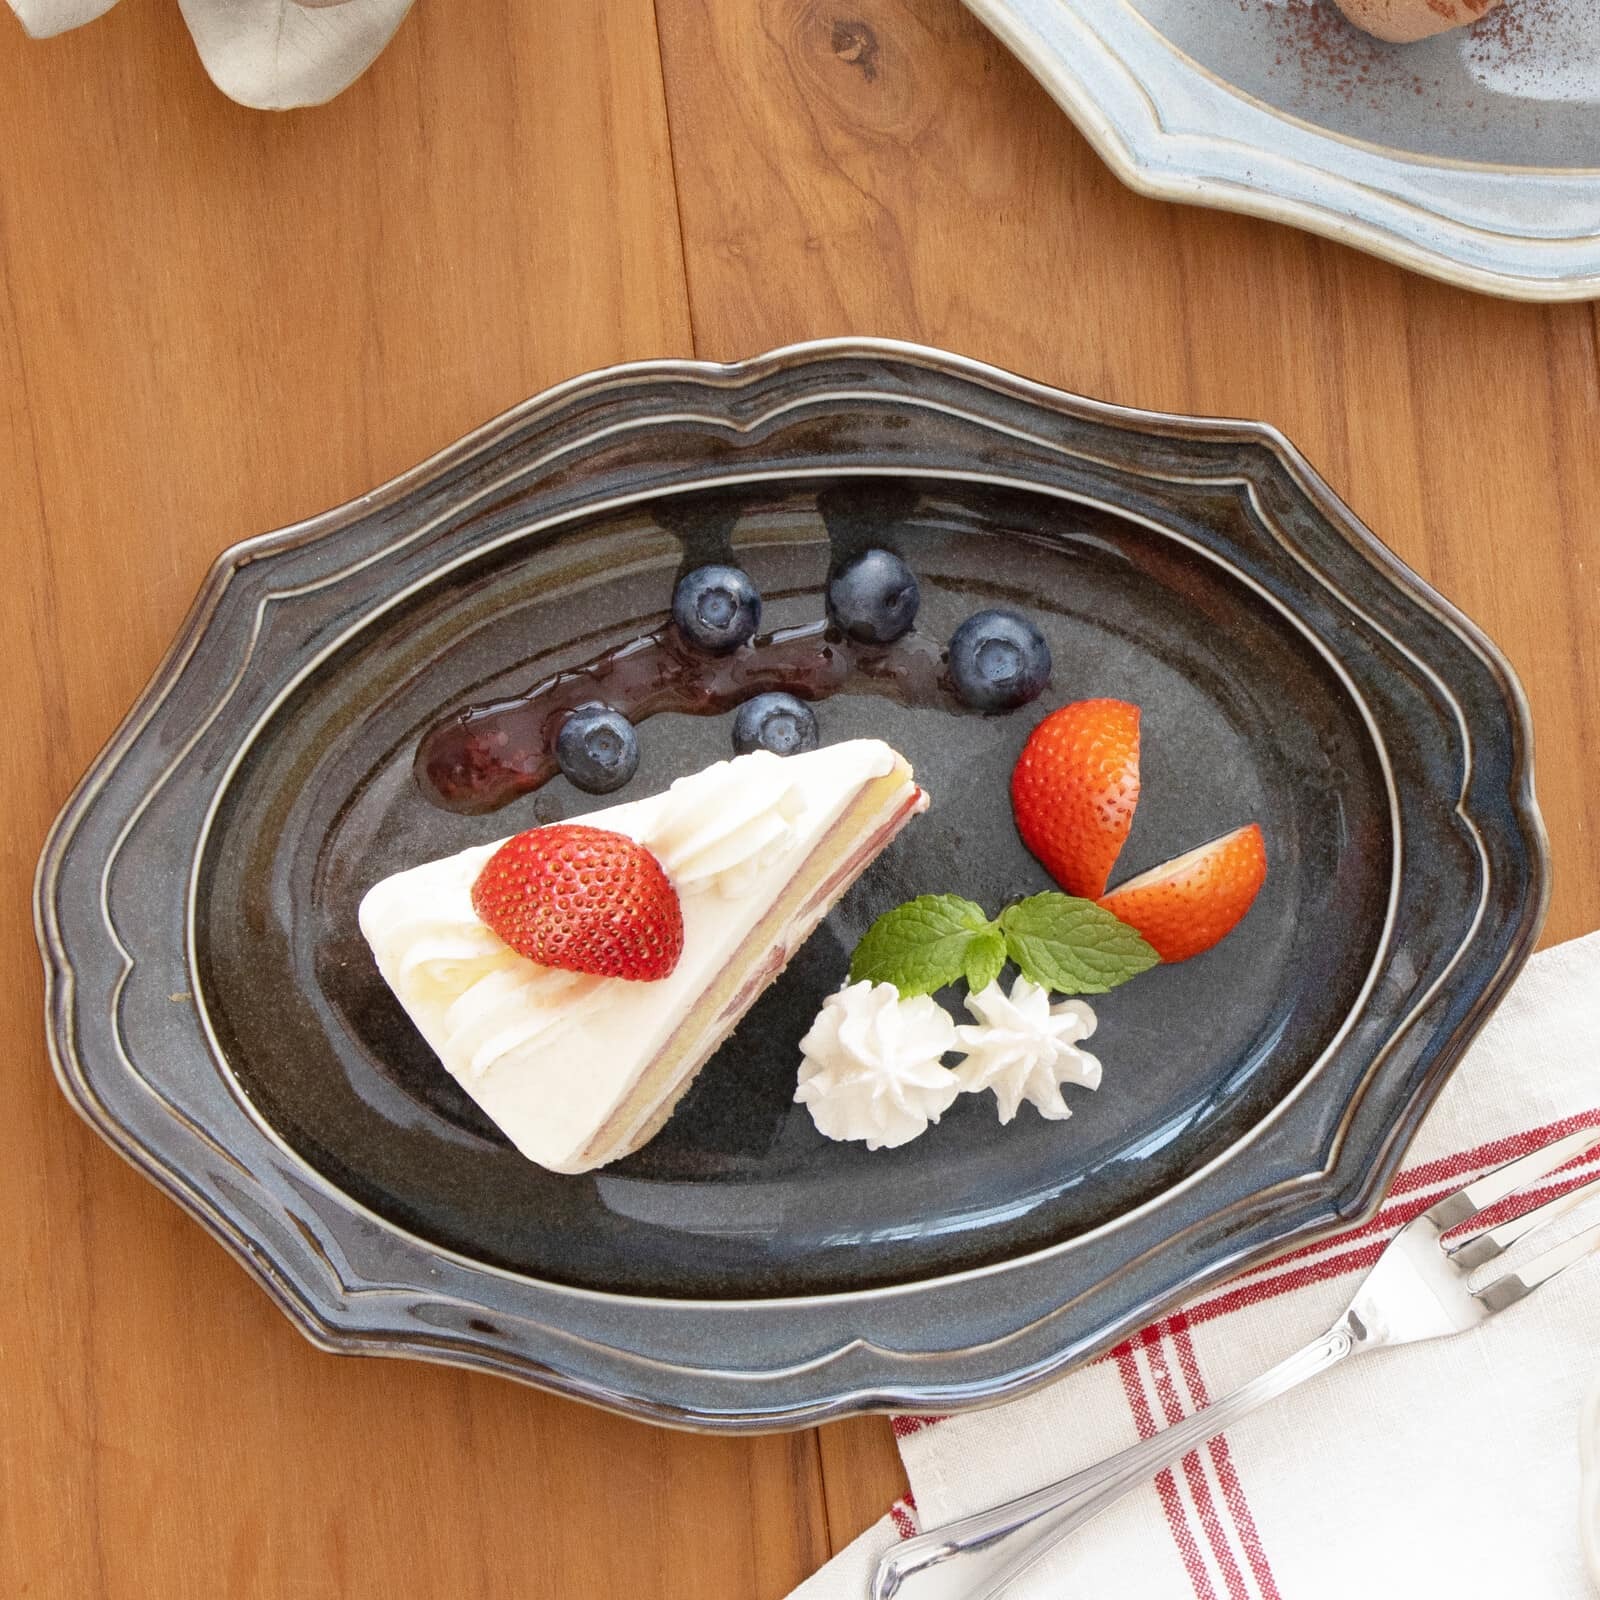 日本餐具【K-ai】Vanves 橢圓盤 美濃燒餐盤 23cm 日本製瓷盤 (7)